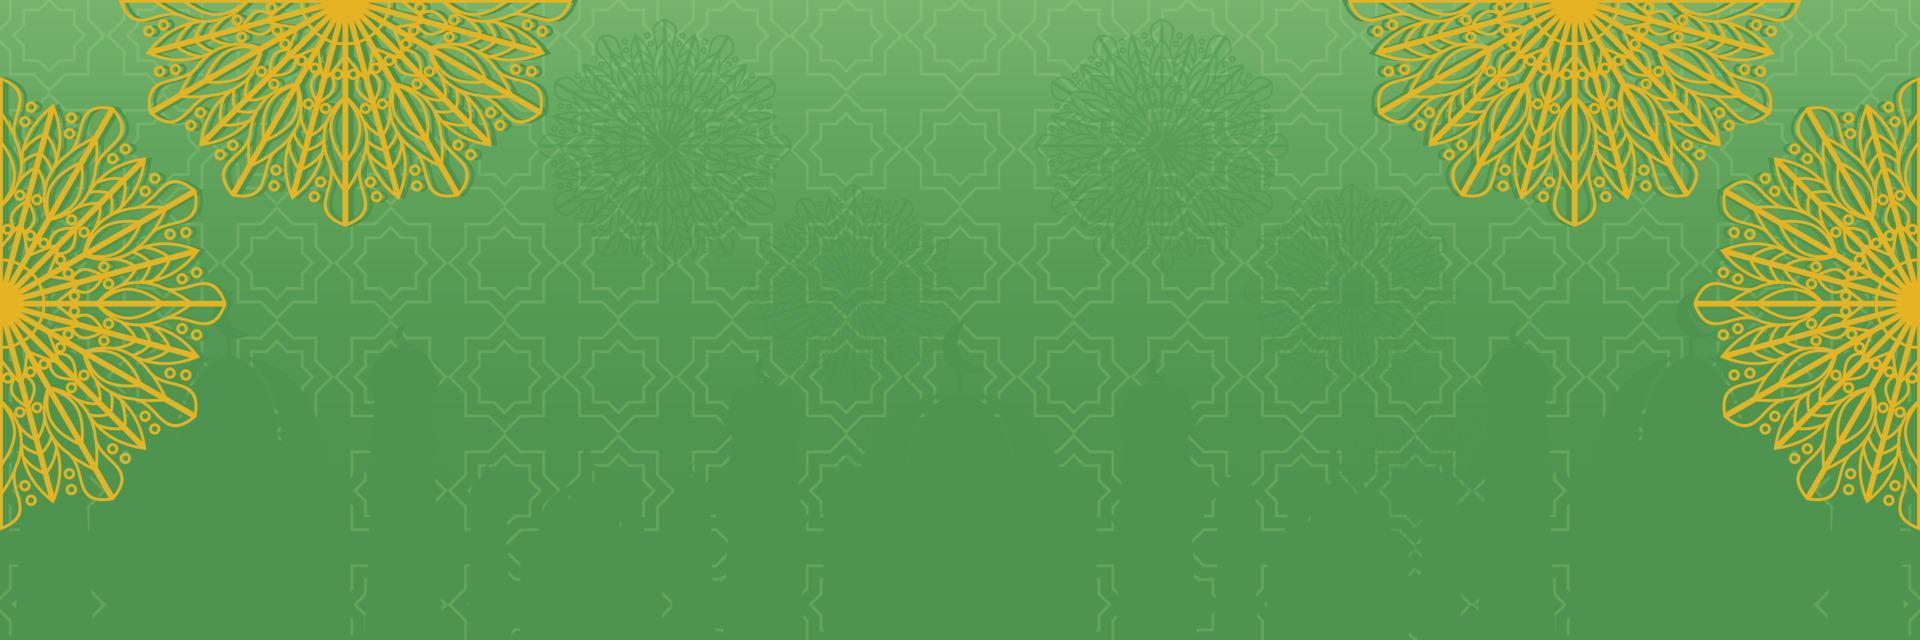 islâmico verde fundo, com lindo mandala ornamento. vetor modelo para bandeiras, cumprimento cartões para islâmico feriados.